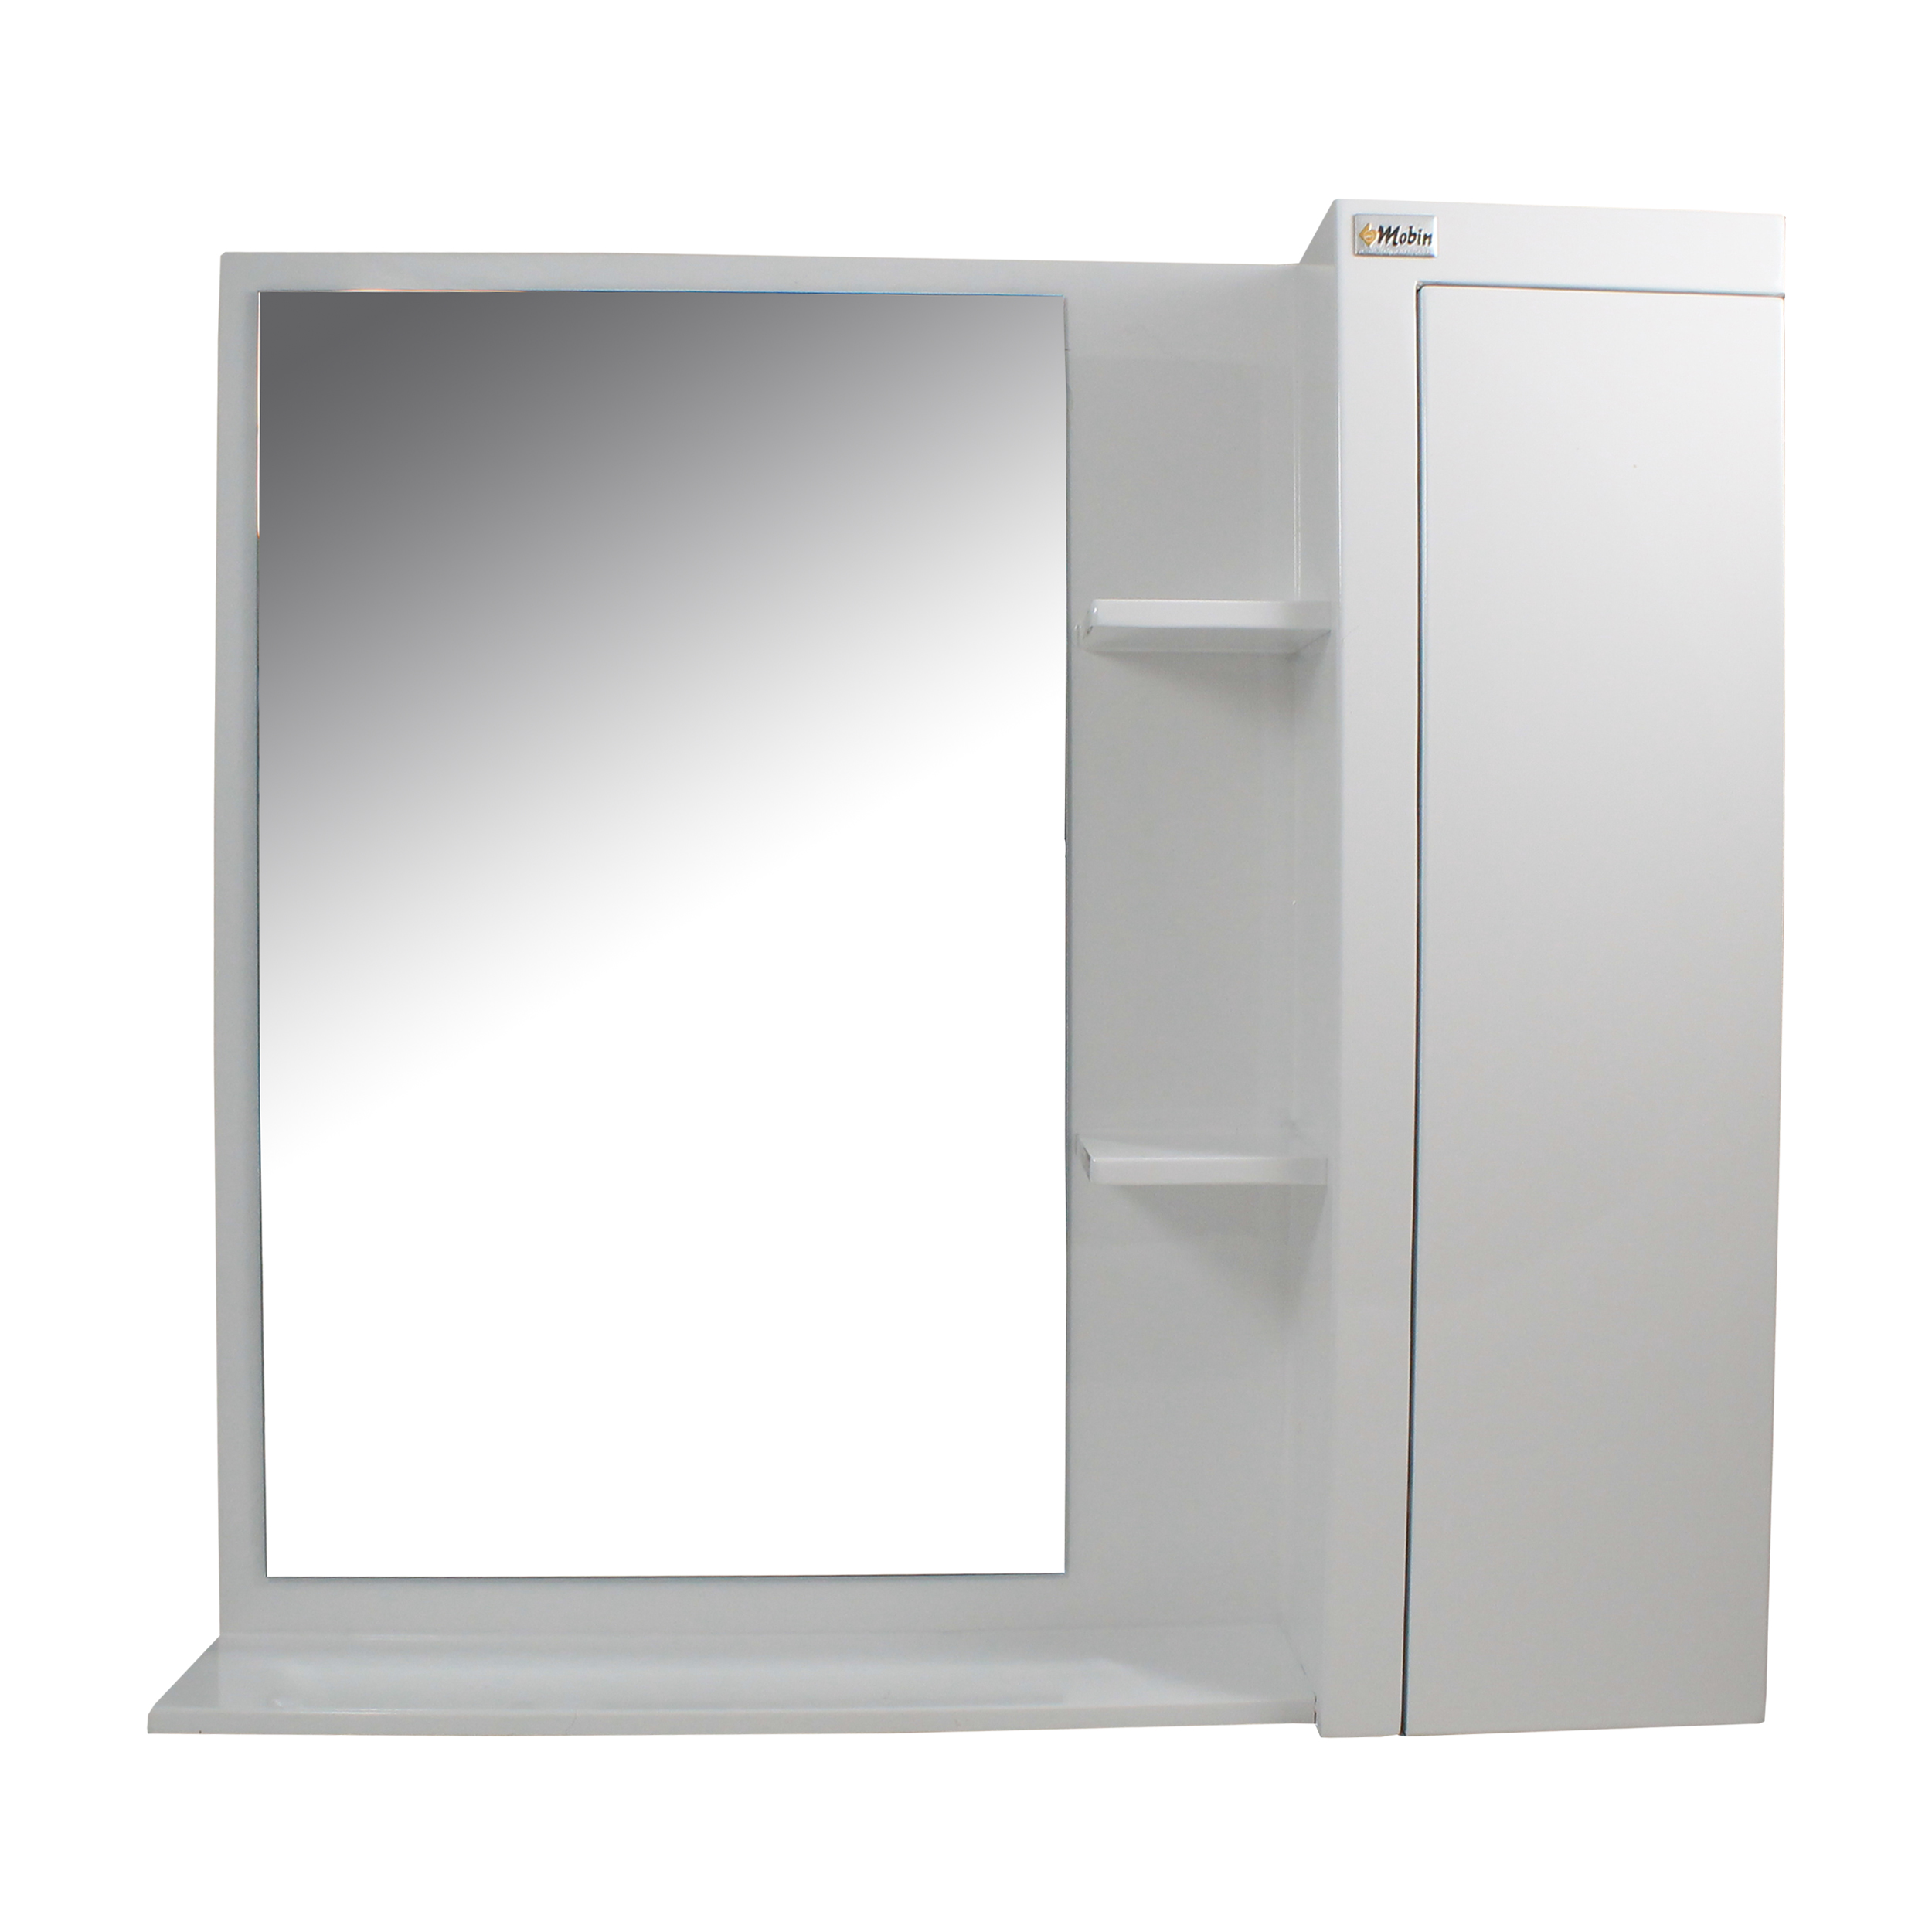 ست آینه و باکس سرویس بهداشتی مبین مدل 3090 